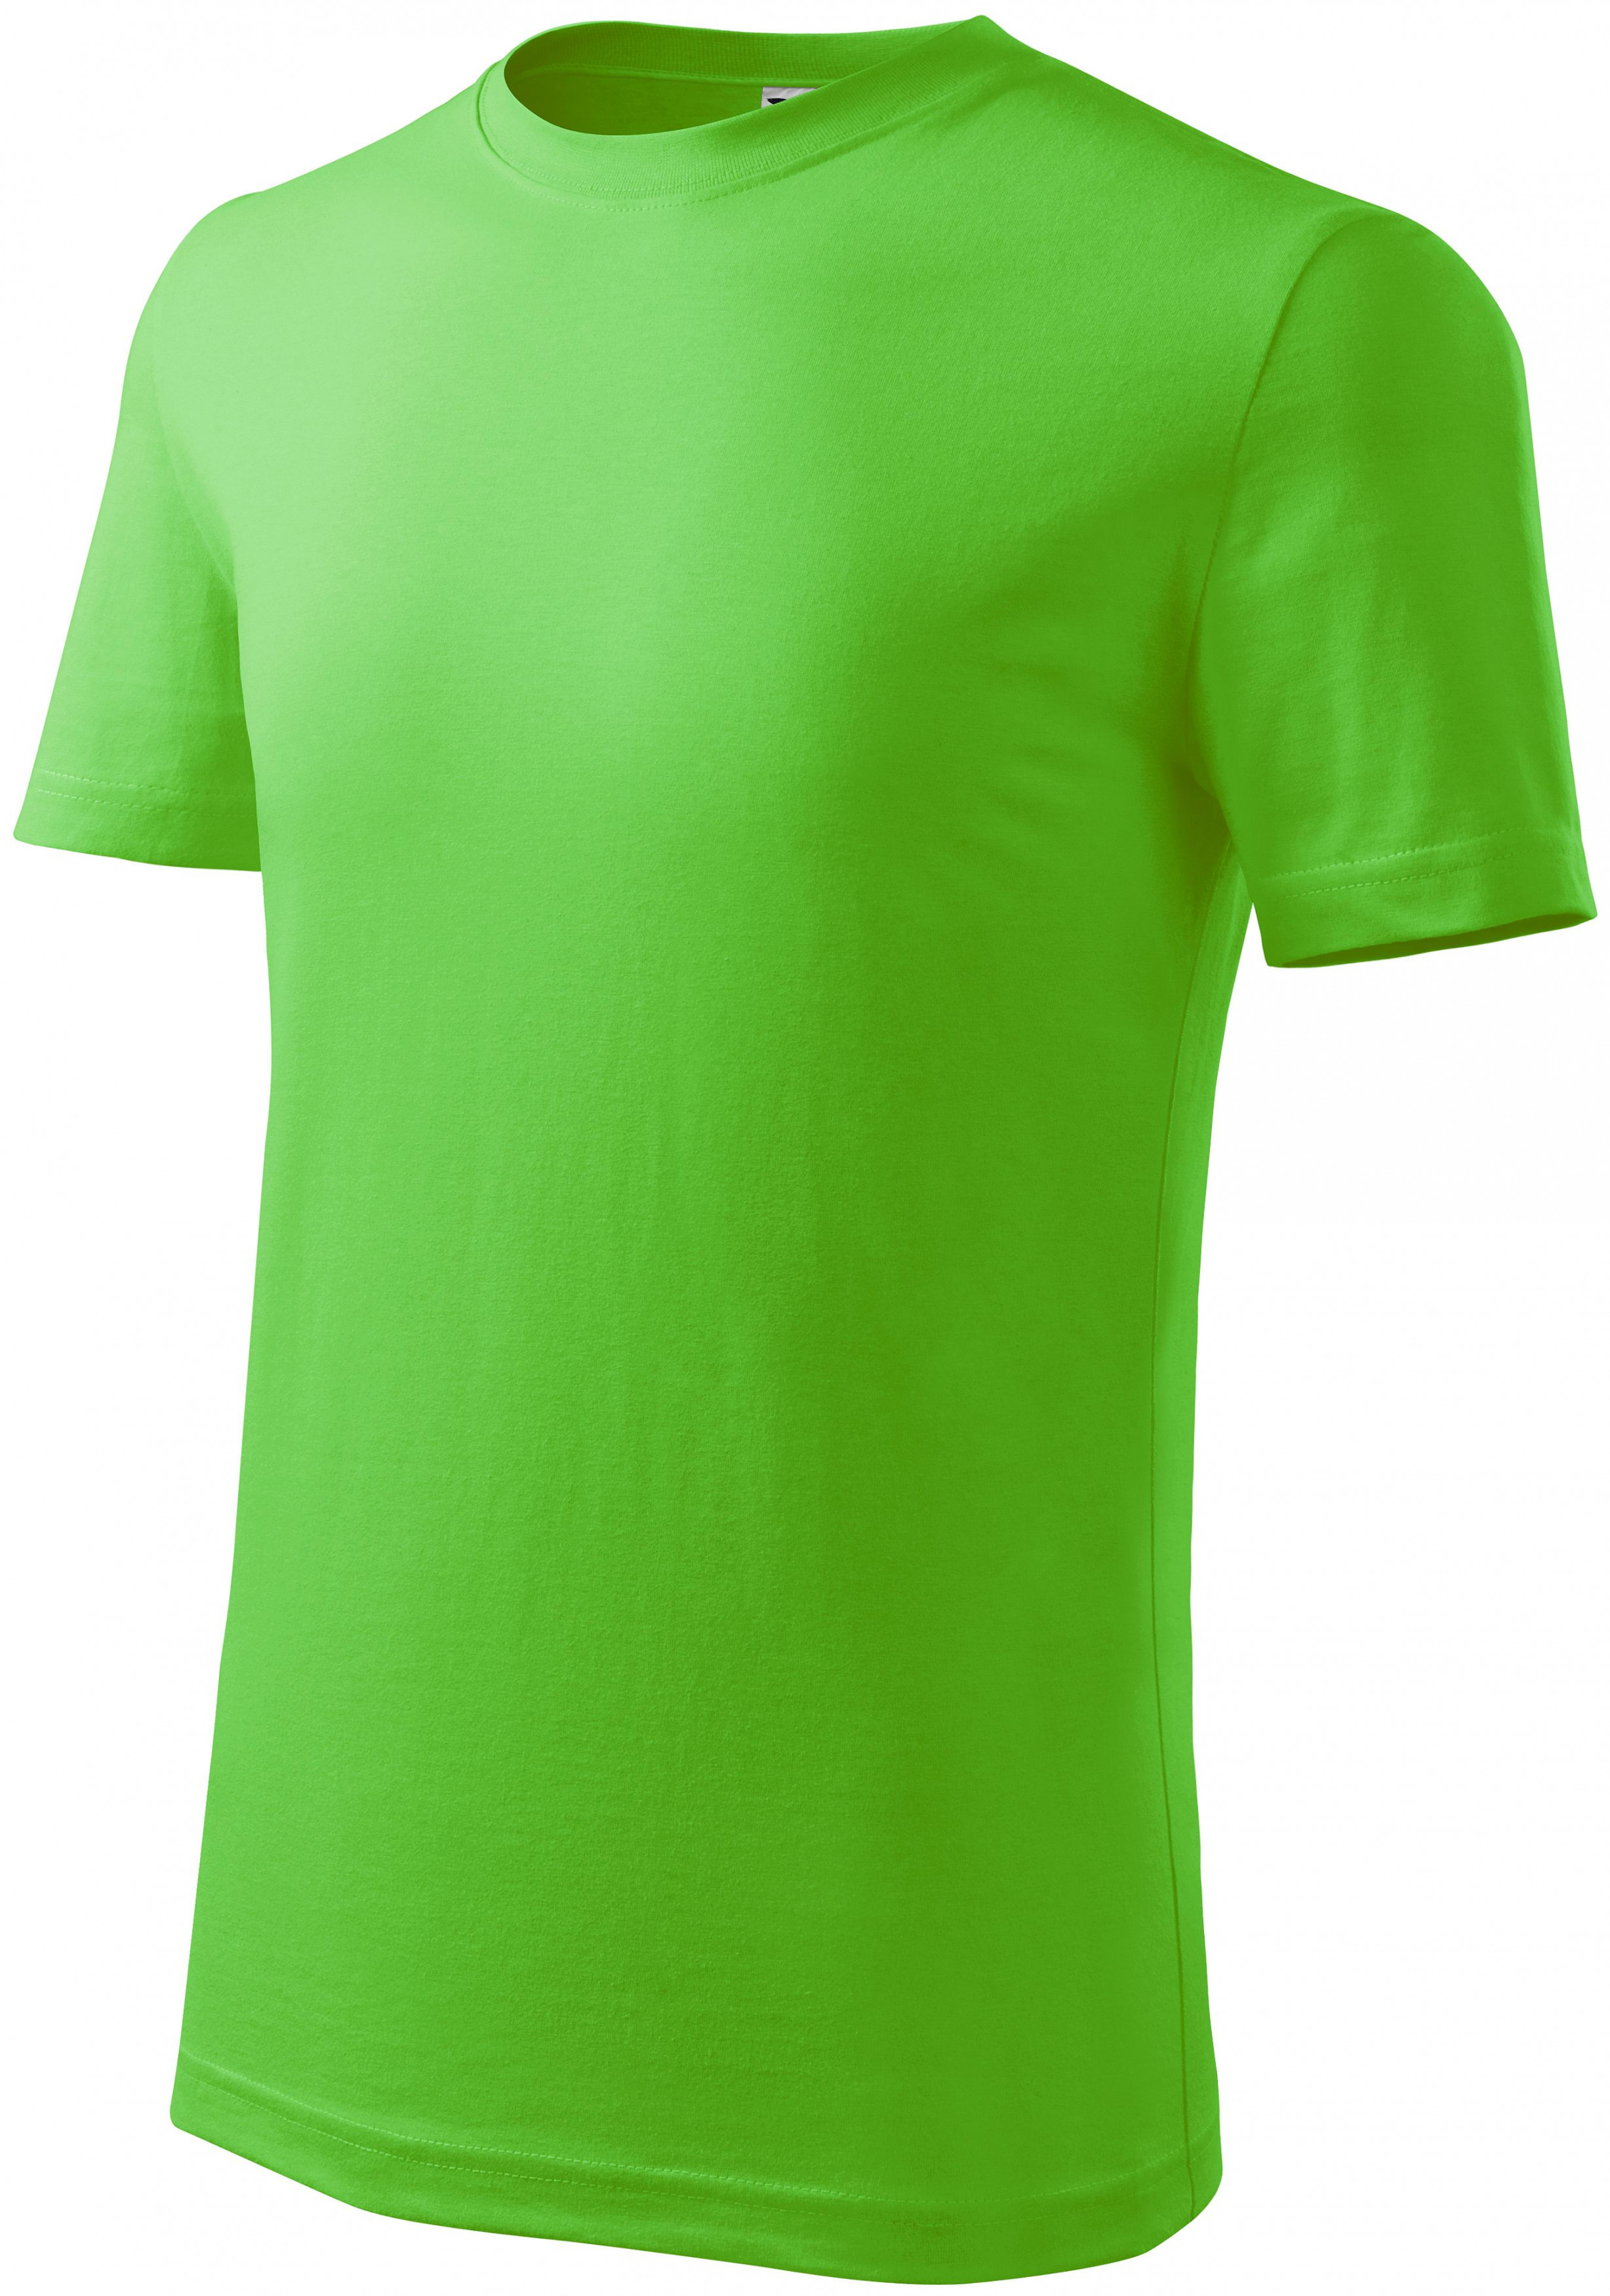 Detské tričko ľahšie, jablkovo zelená, 134cm / 8rokov